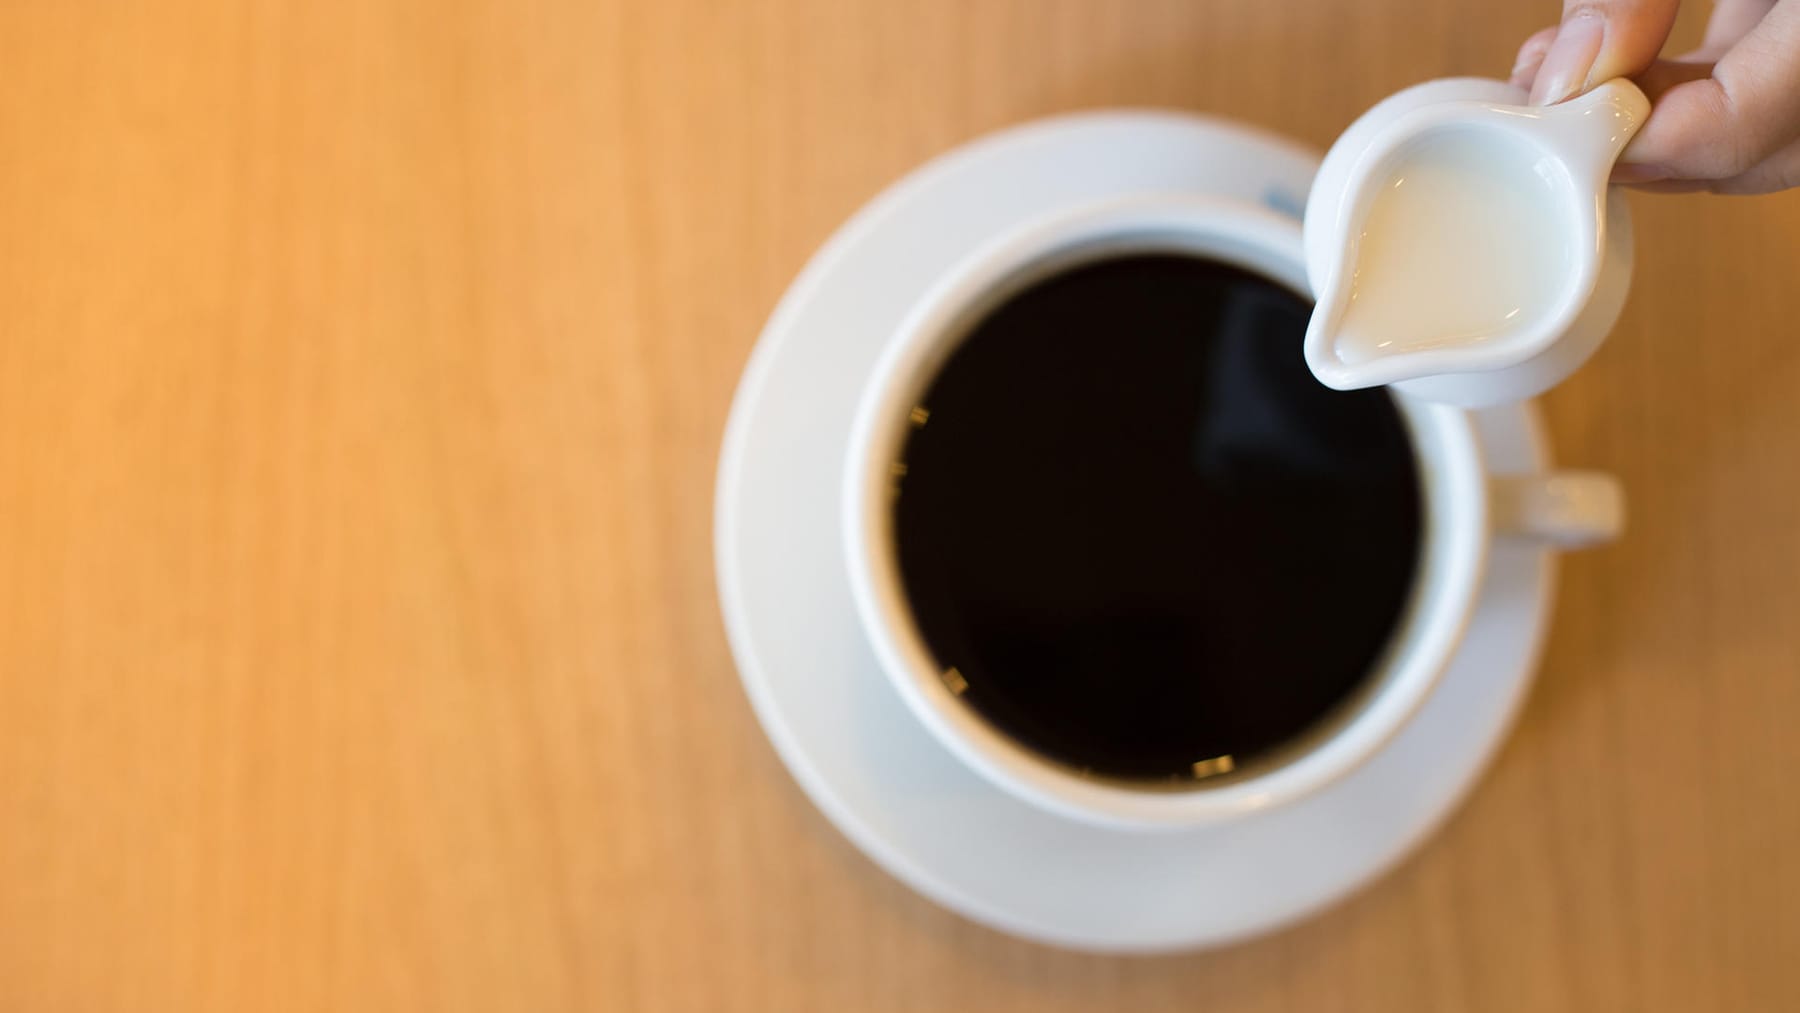 Kondensmilch, Kaffeesahne, Kaffeemilch: Wo sind die Unterschiede?